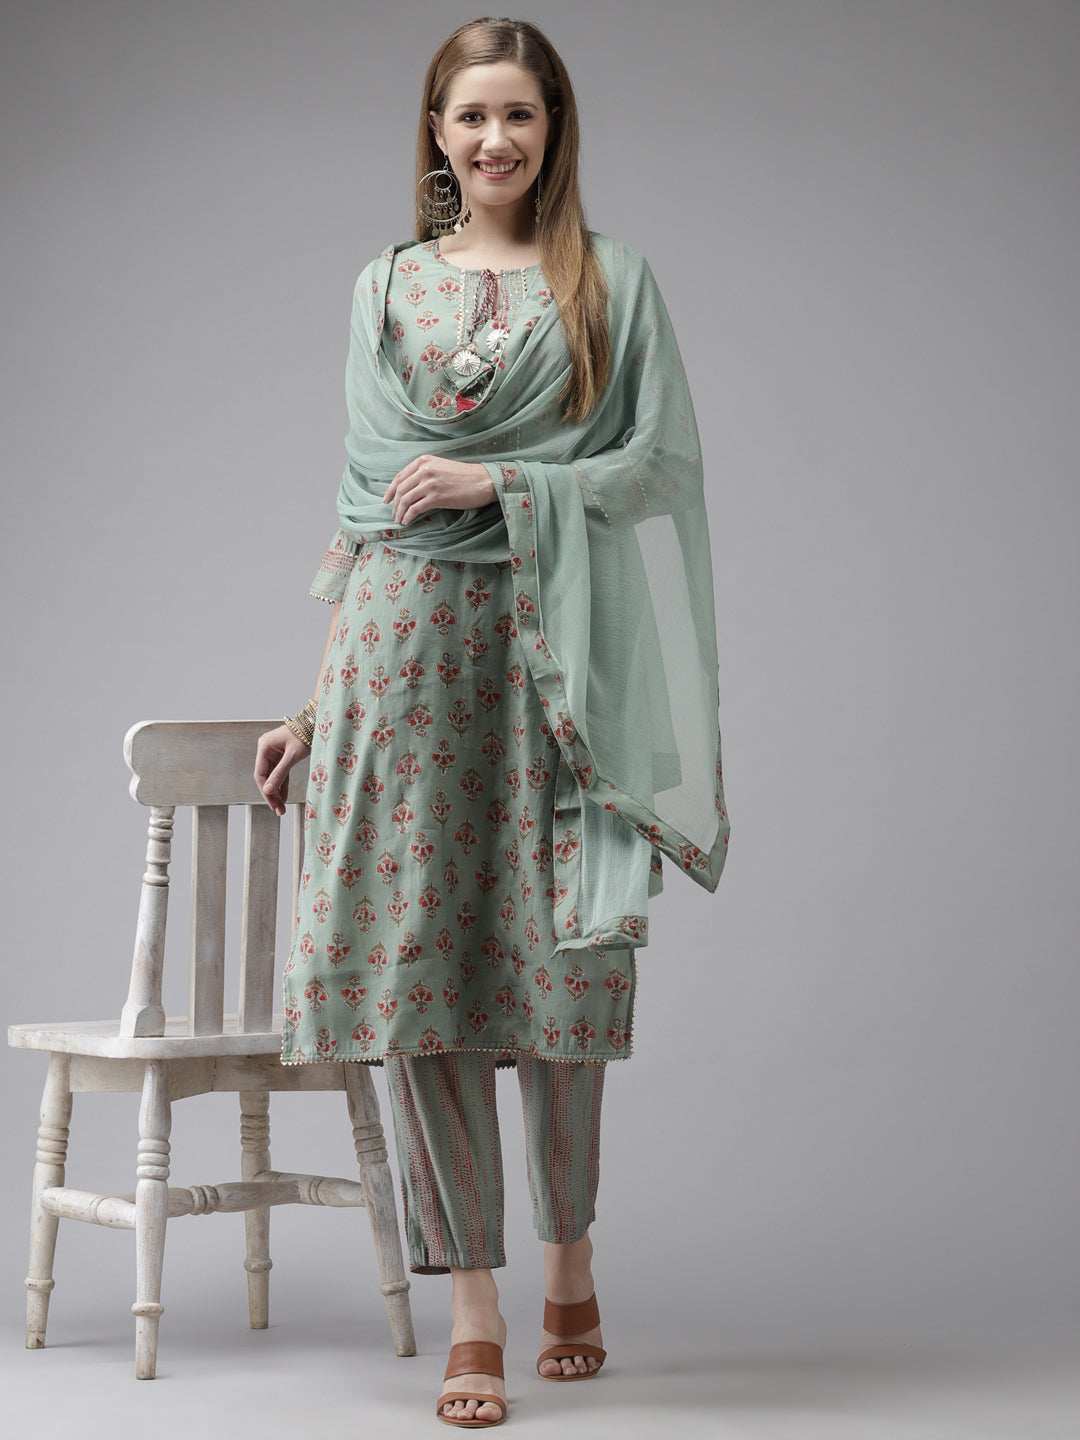 Women's Art Silk Green Embroidered A-Line Kurta Trouser Dupatta Set - Navyaa